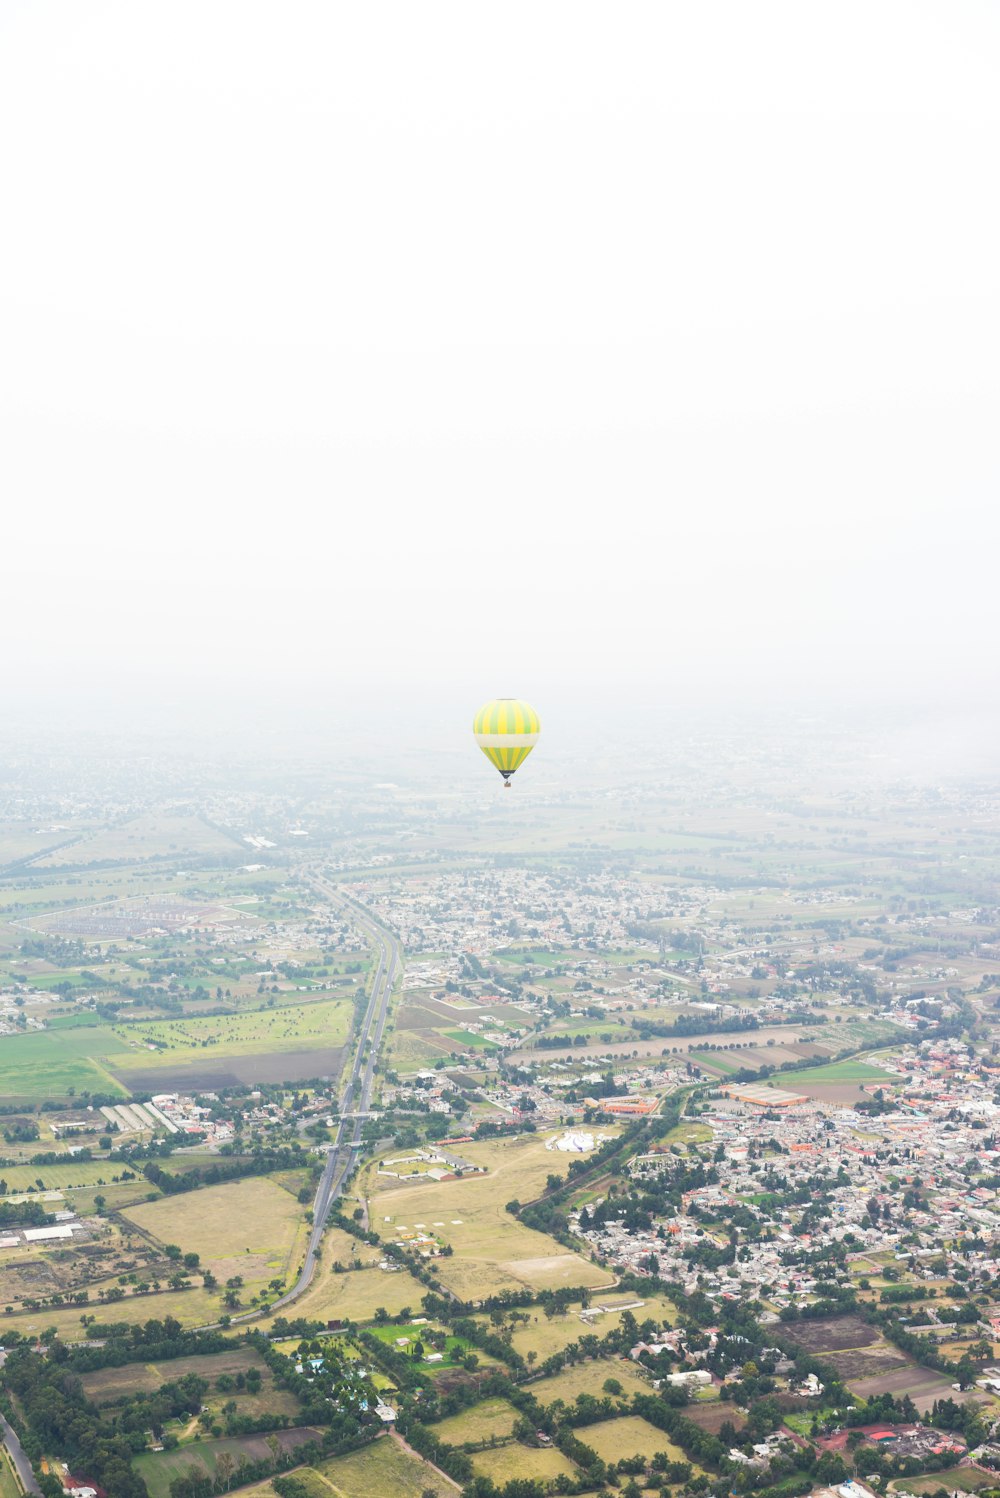 photo de montgolfière jaune flottant au-dessus des maisons